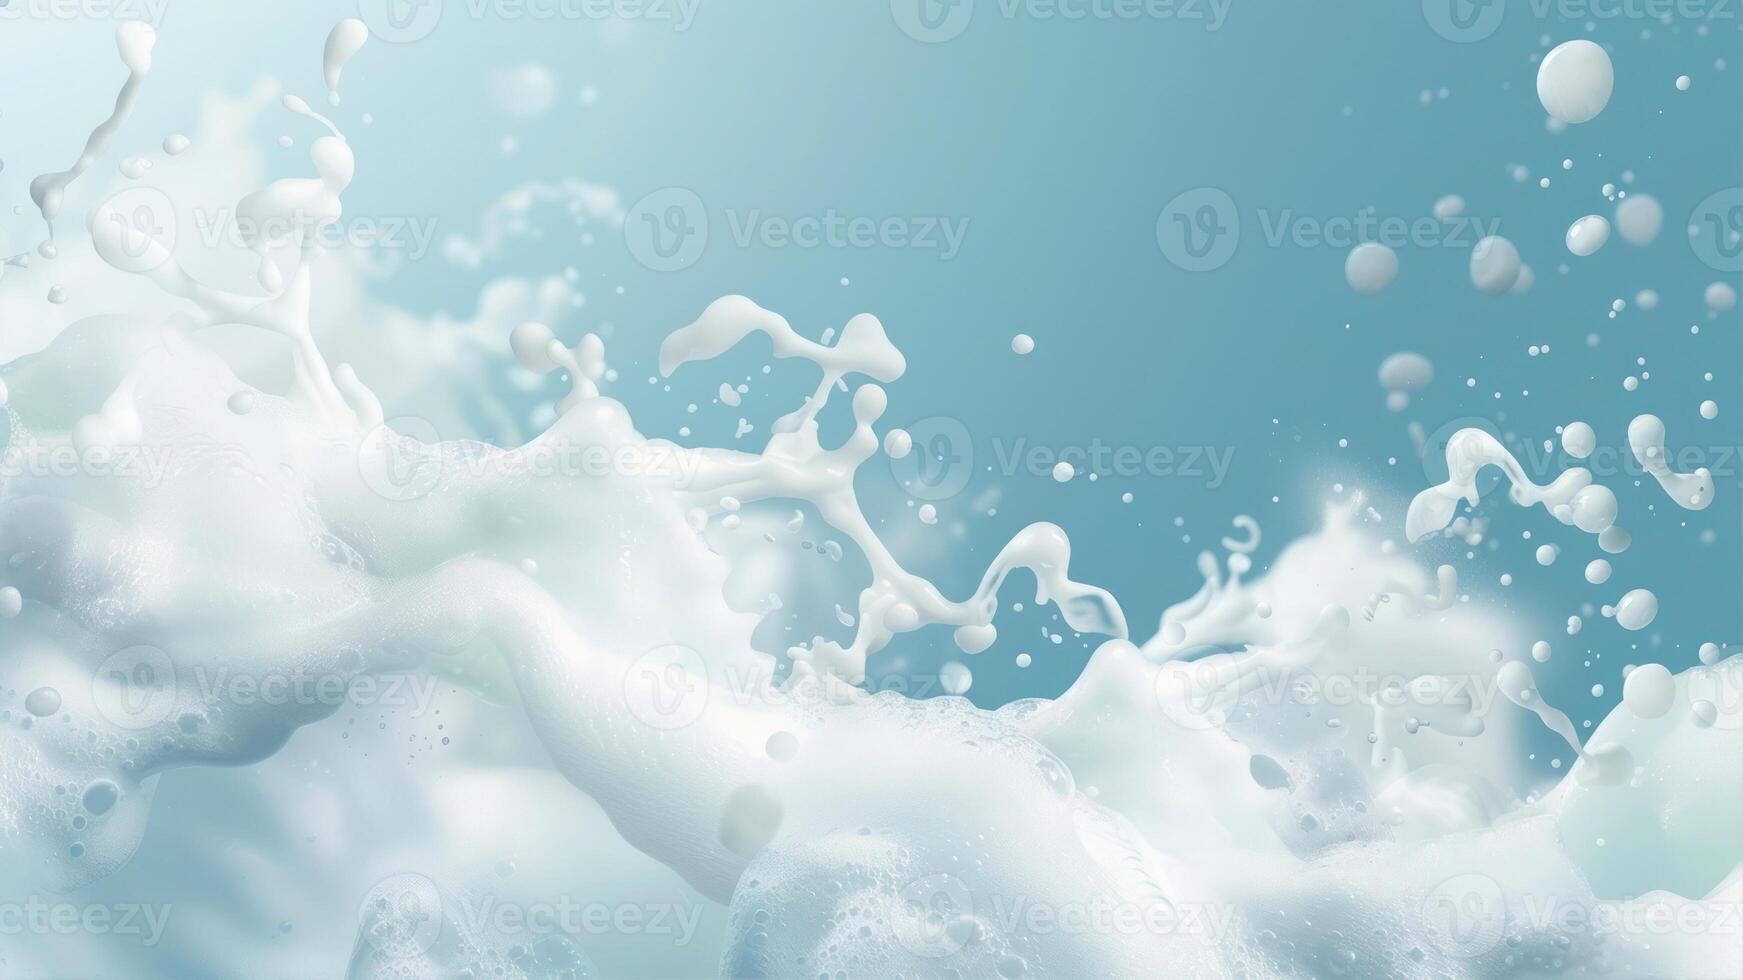 AI generated Milk splash on blue background. photo